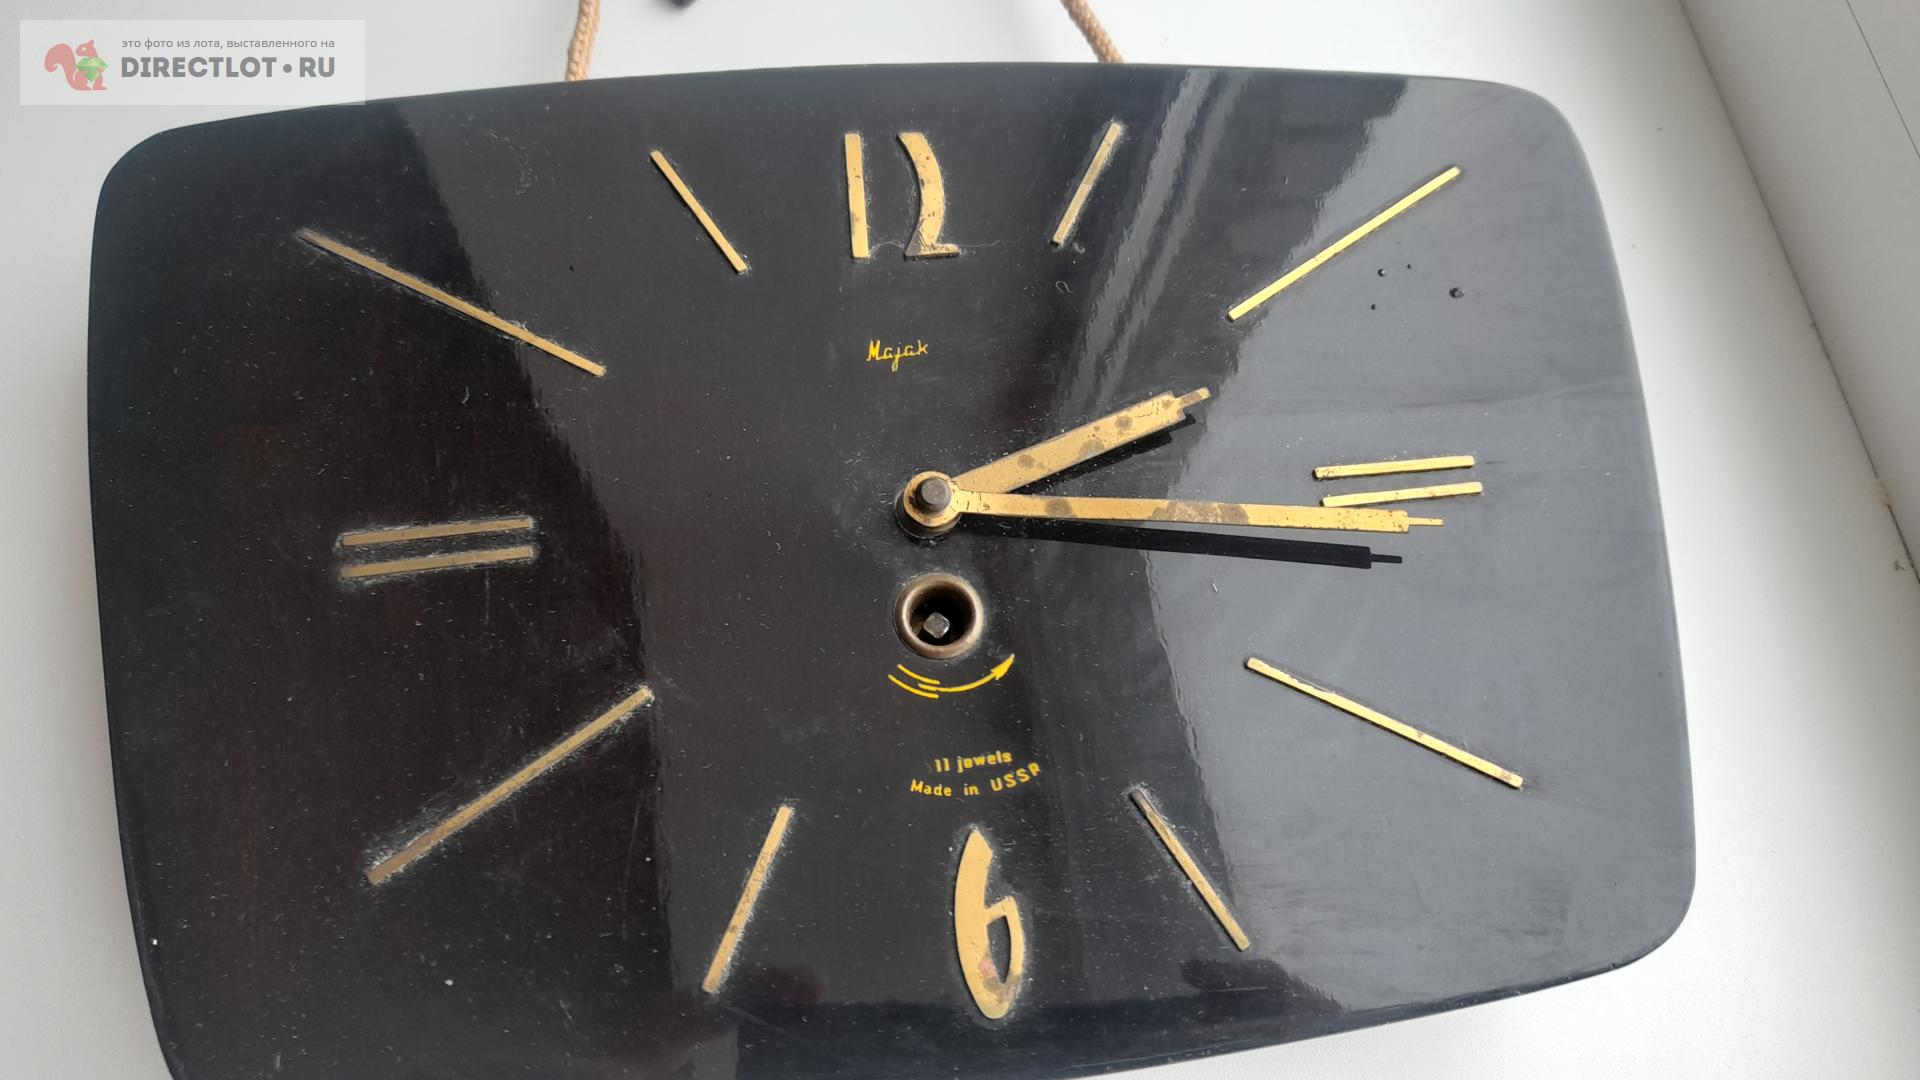 Часы настенные Маяк СССР купить в Москве цена 900 Р на DIRECTLOT.RU - Предметы благоустройства продам